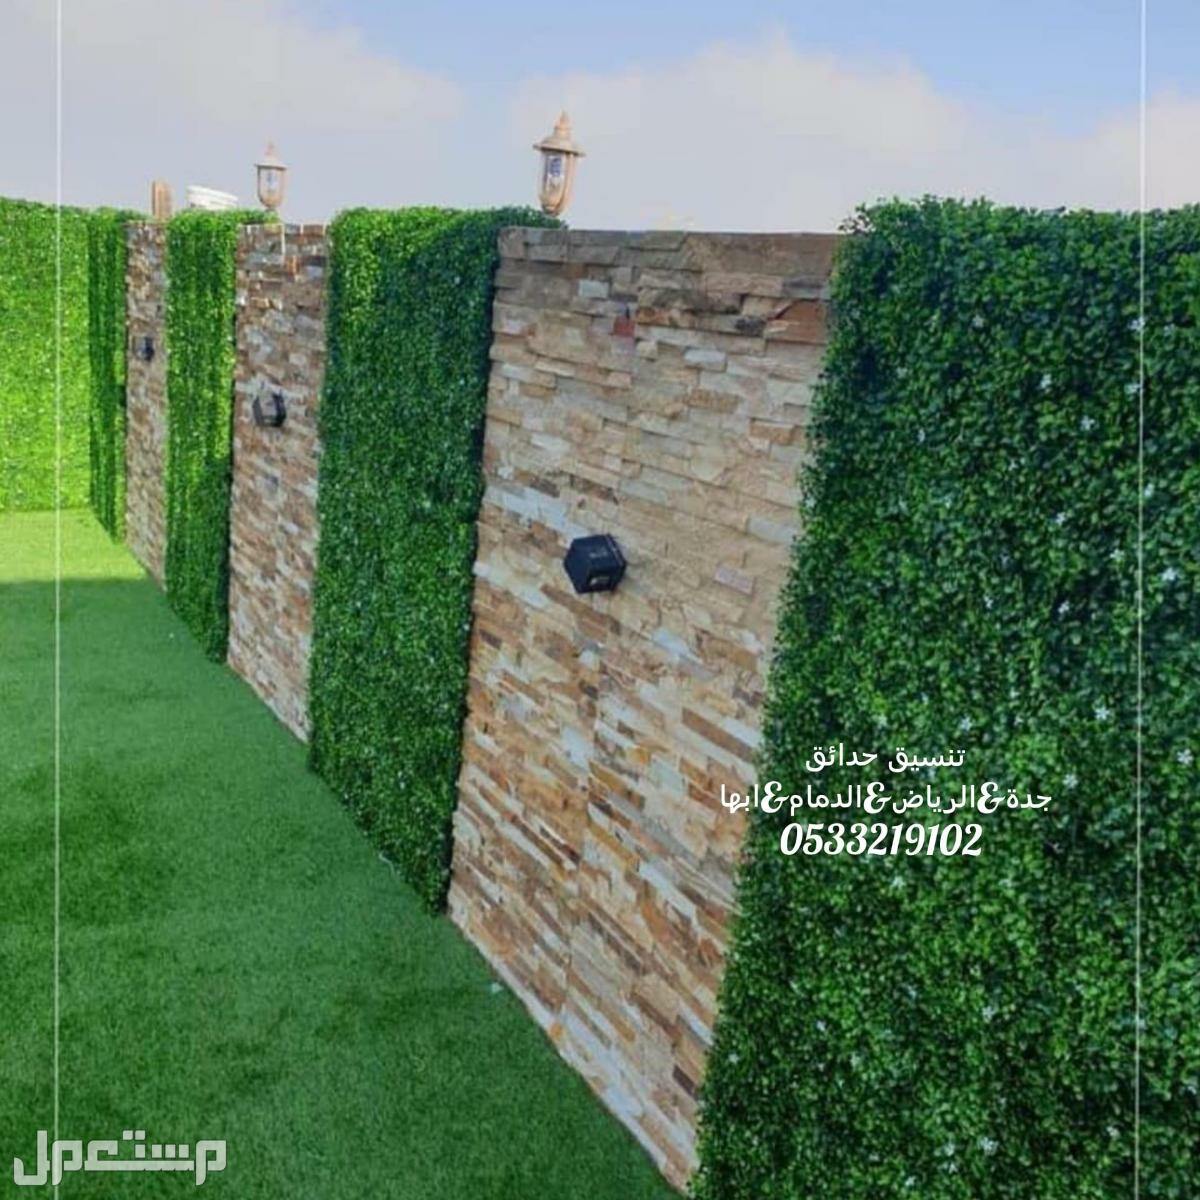 تركيب عشب جدارى مظلات تصميم شلالات تنسيق الحدائق المنزلية عشب صناعى حدائق العشب الصناعى 0533219102